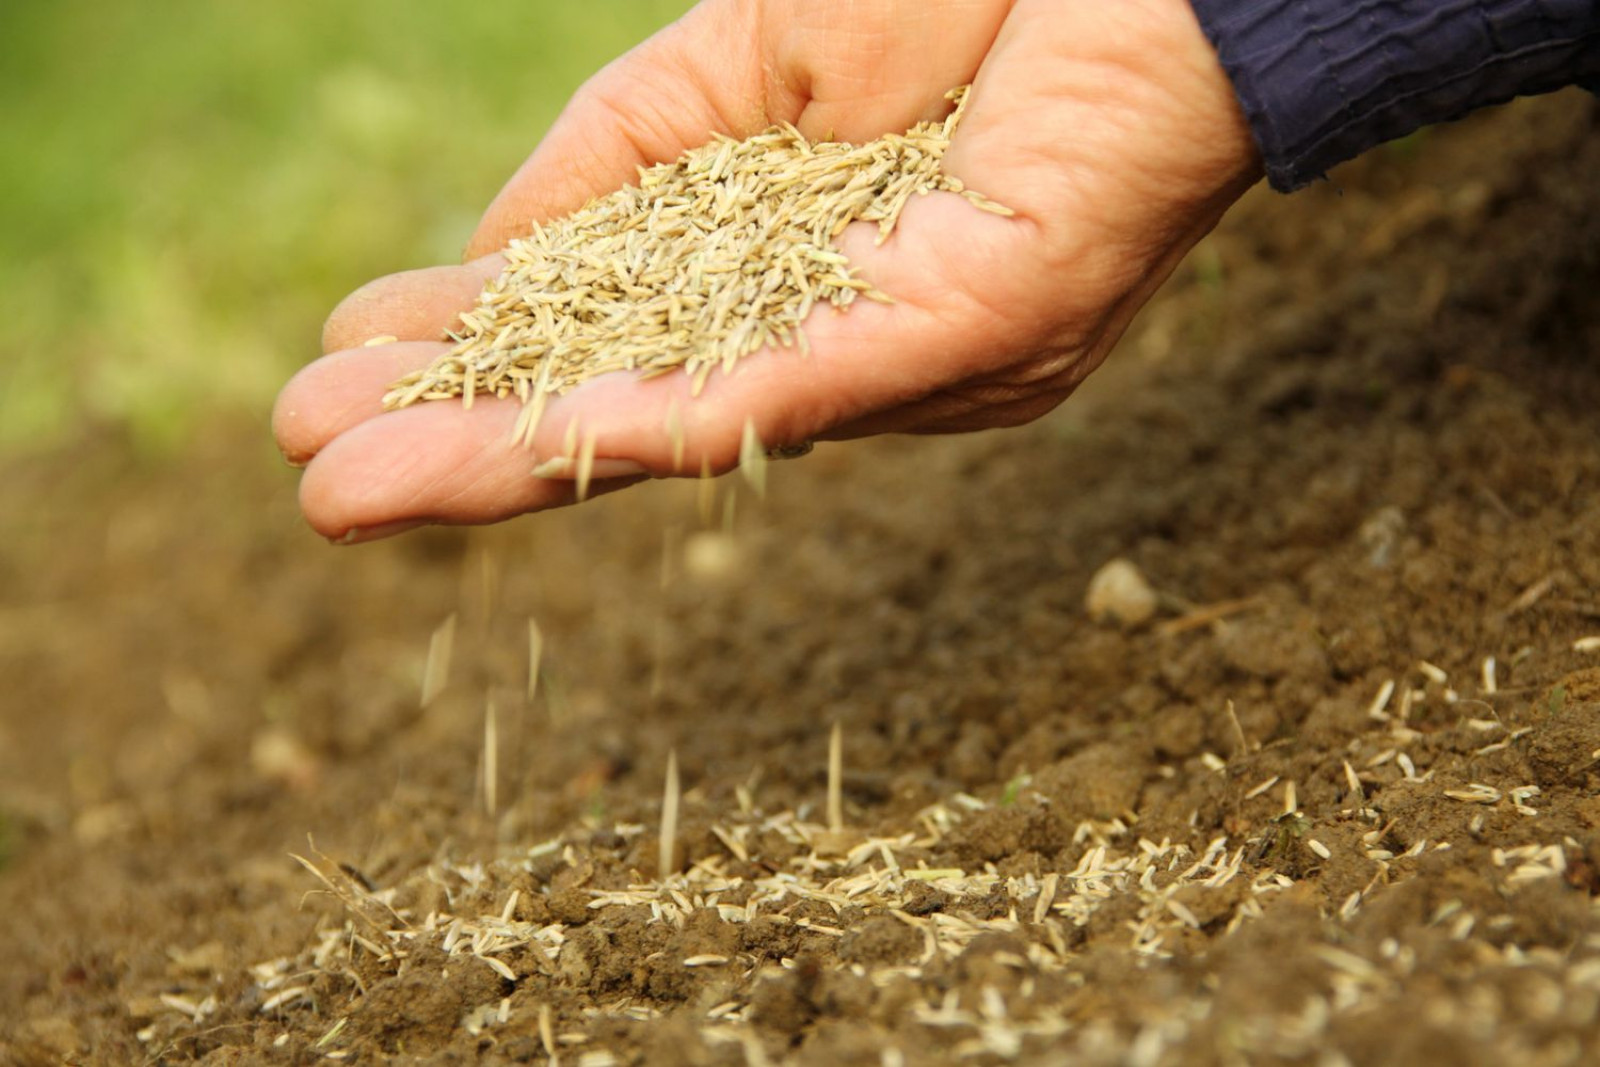 Krok 2. WYSIEWANIE  Załóż nowy trawnik lub dosiej trawę na uszkodzonych fragmentach. Nasiona wykiełkują w ciągu kilku/kilkunastu dni (w zależności od odmiany). Sprzyja im wyrównana temperatura i częstsze opady. Pamiętaj, by odpowiednio przygotować podłoże! Ziemia musi być dobrze spulchniona, żyzna, o pH 5,5-6,5. Na tak przygotowanym podłożu murawa będzie zwarta, mocna i dobrze przygotowana do zimy.